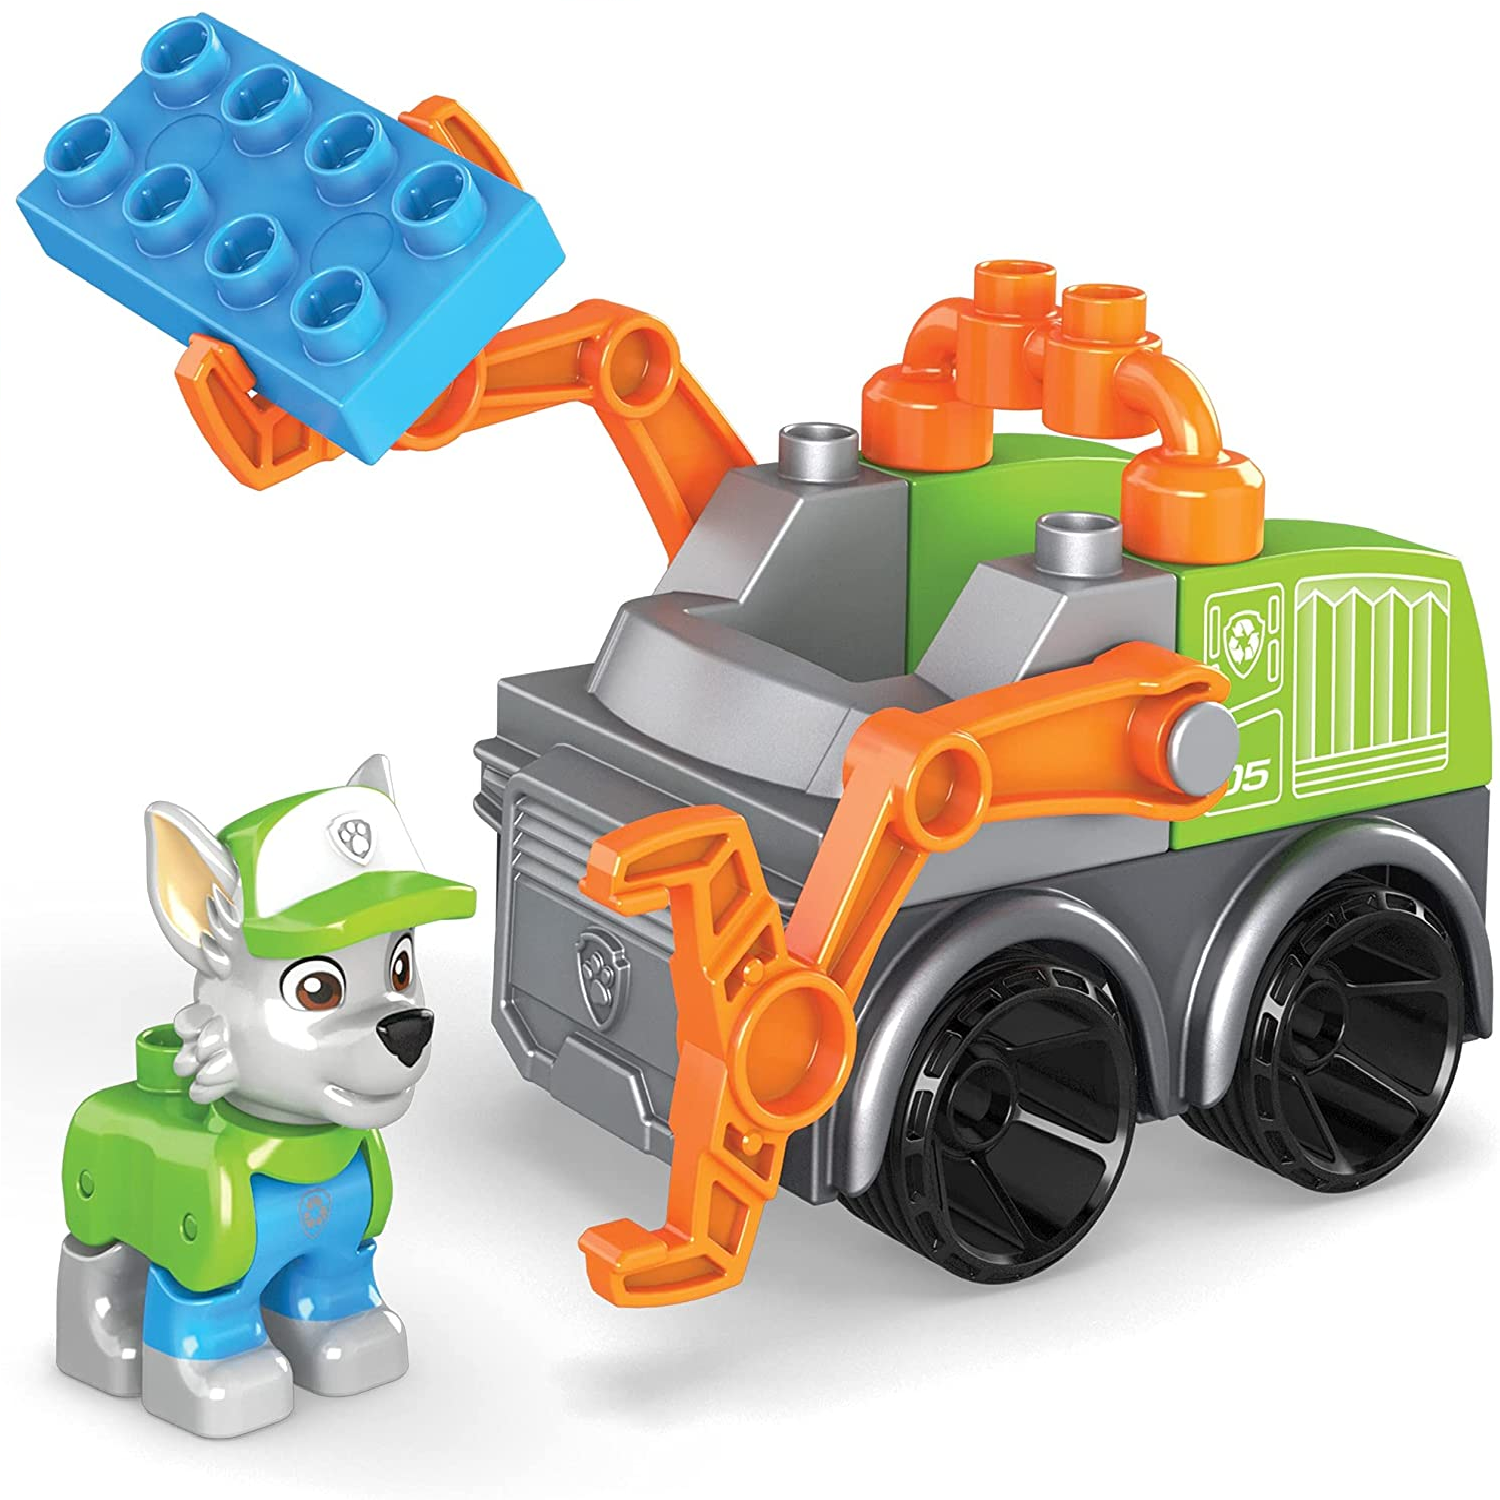 Recycling-Truck Bauset mit 11 Bausteine, Spielset für Kinder ab 3 Jahren